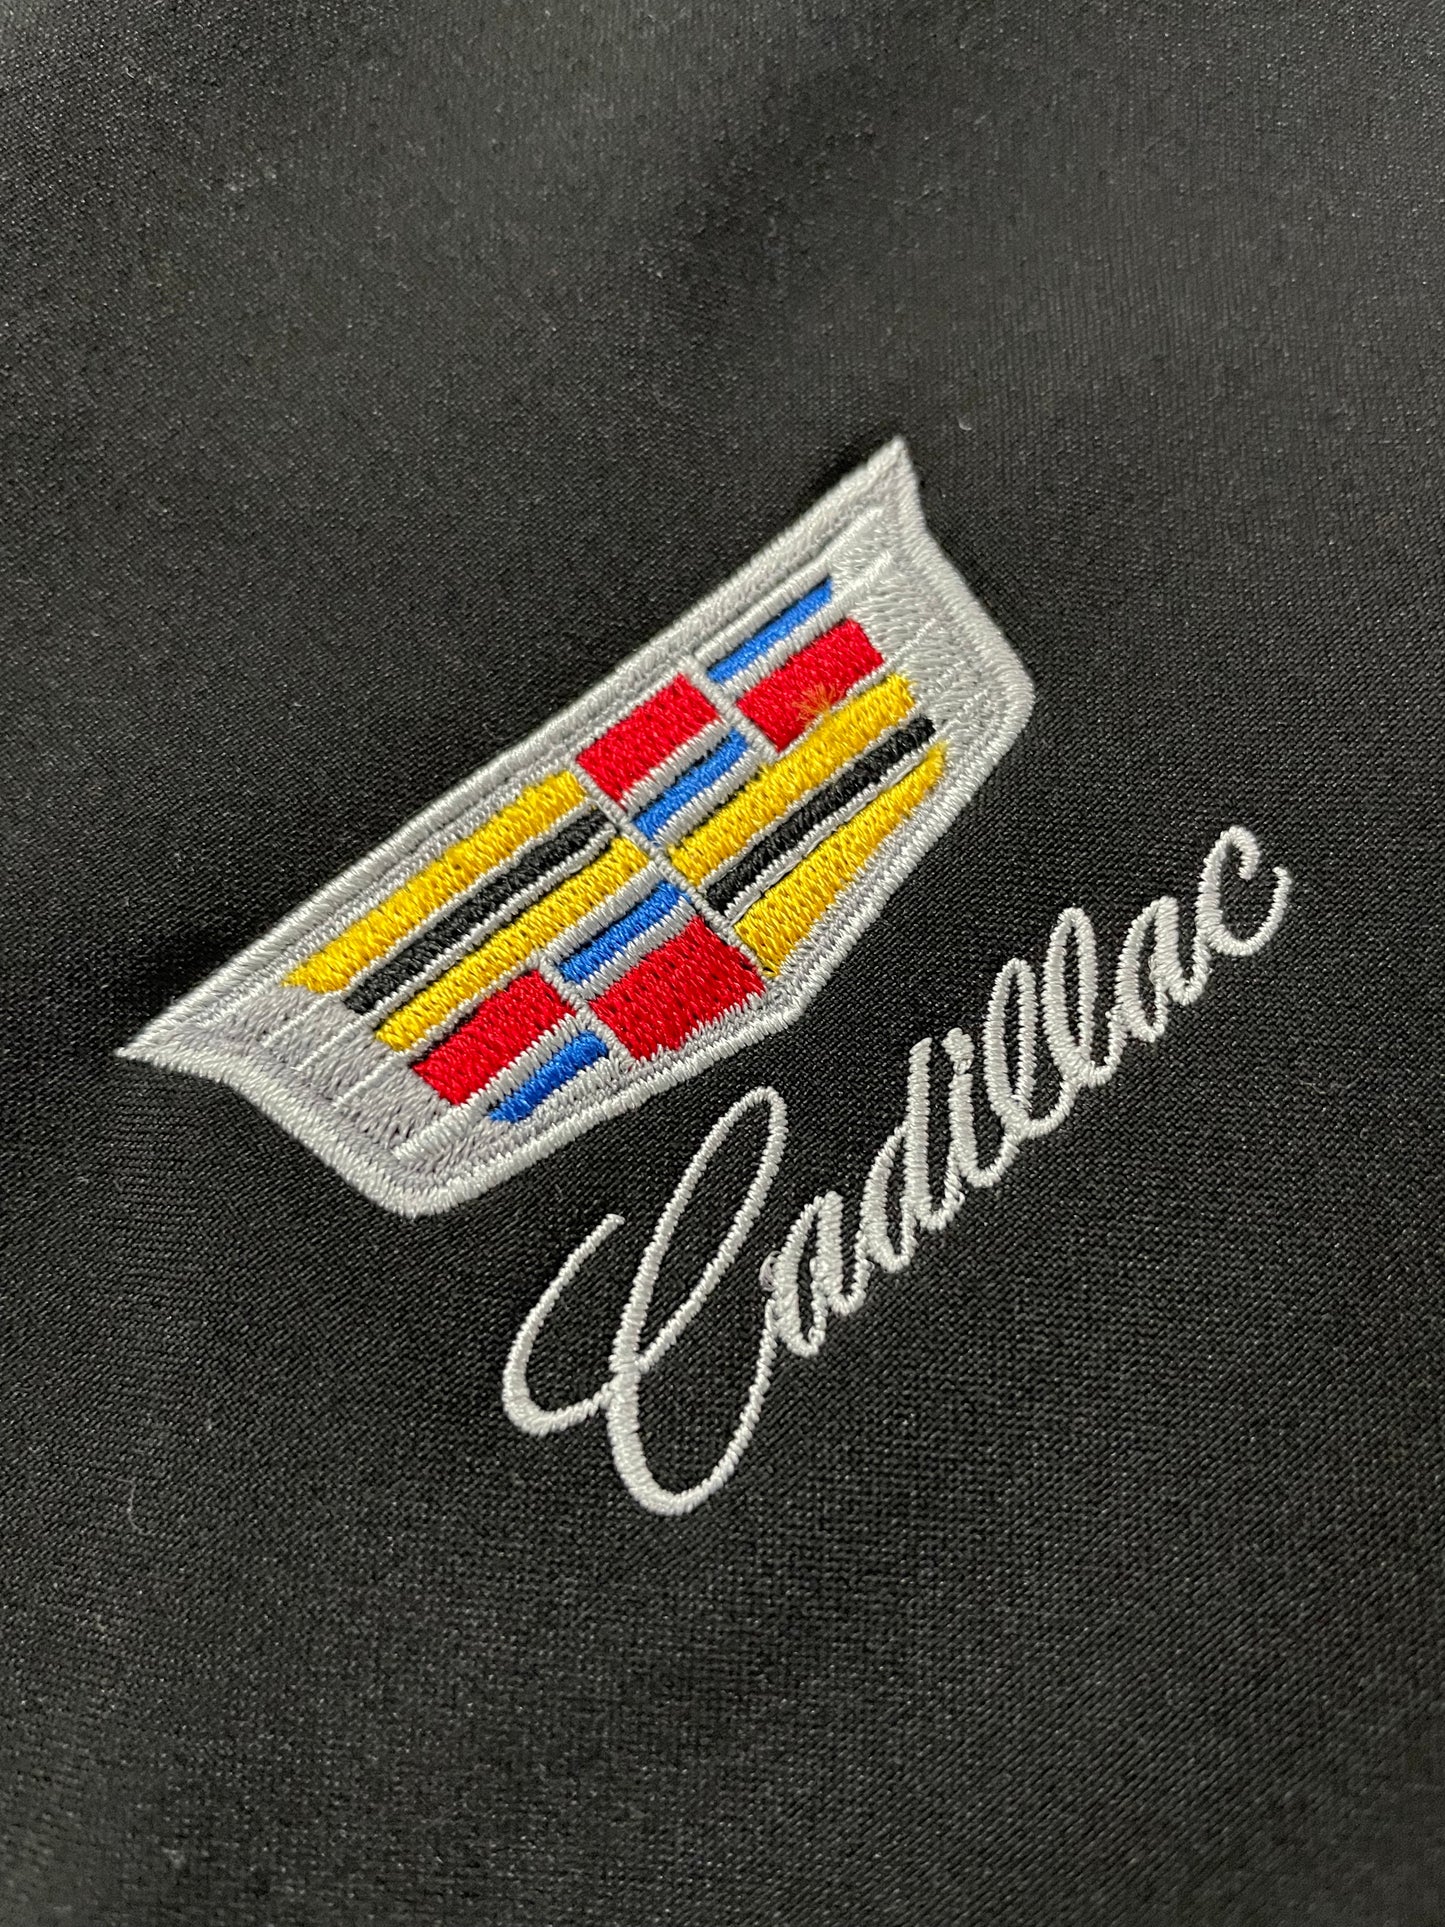 Cadillac Softshell Jacke mit Cadillac Logo Schwarz